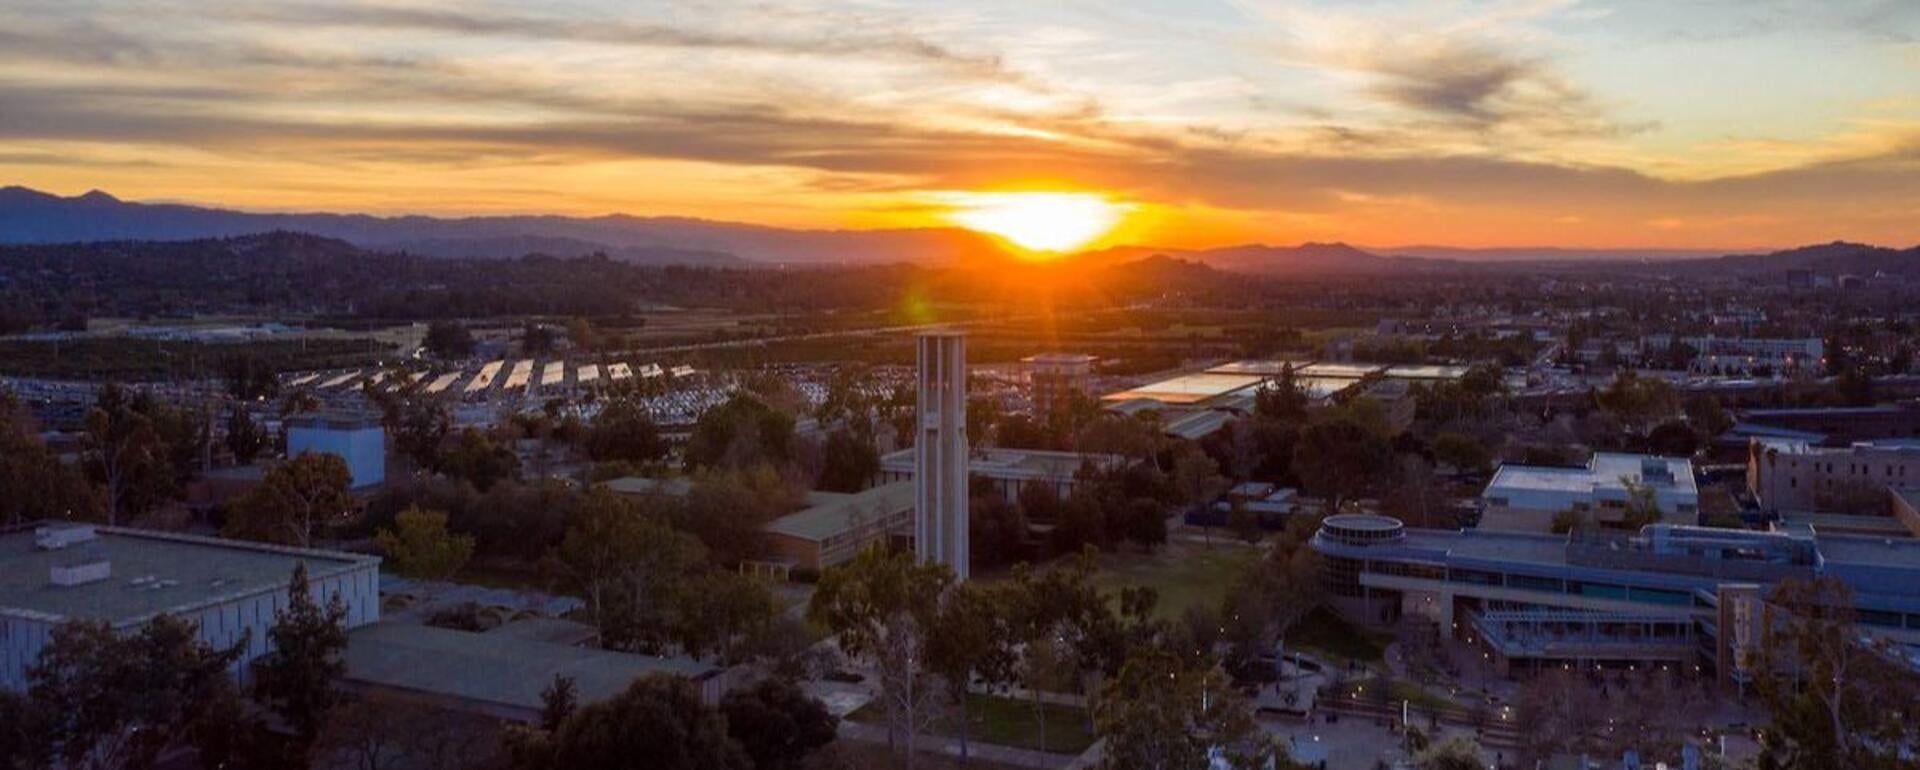 UCR Campus Sunset